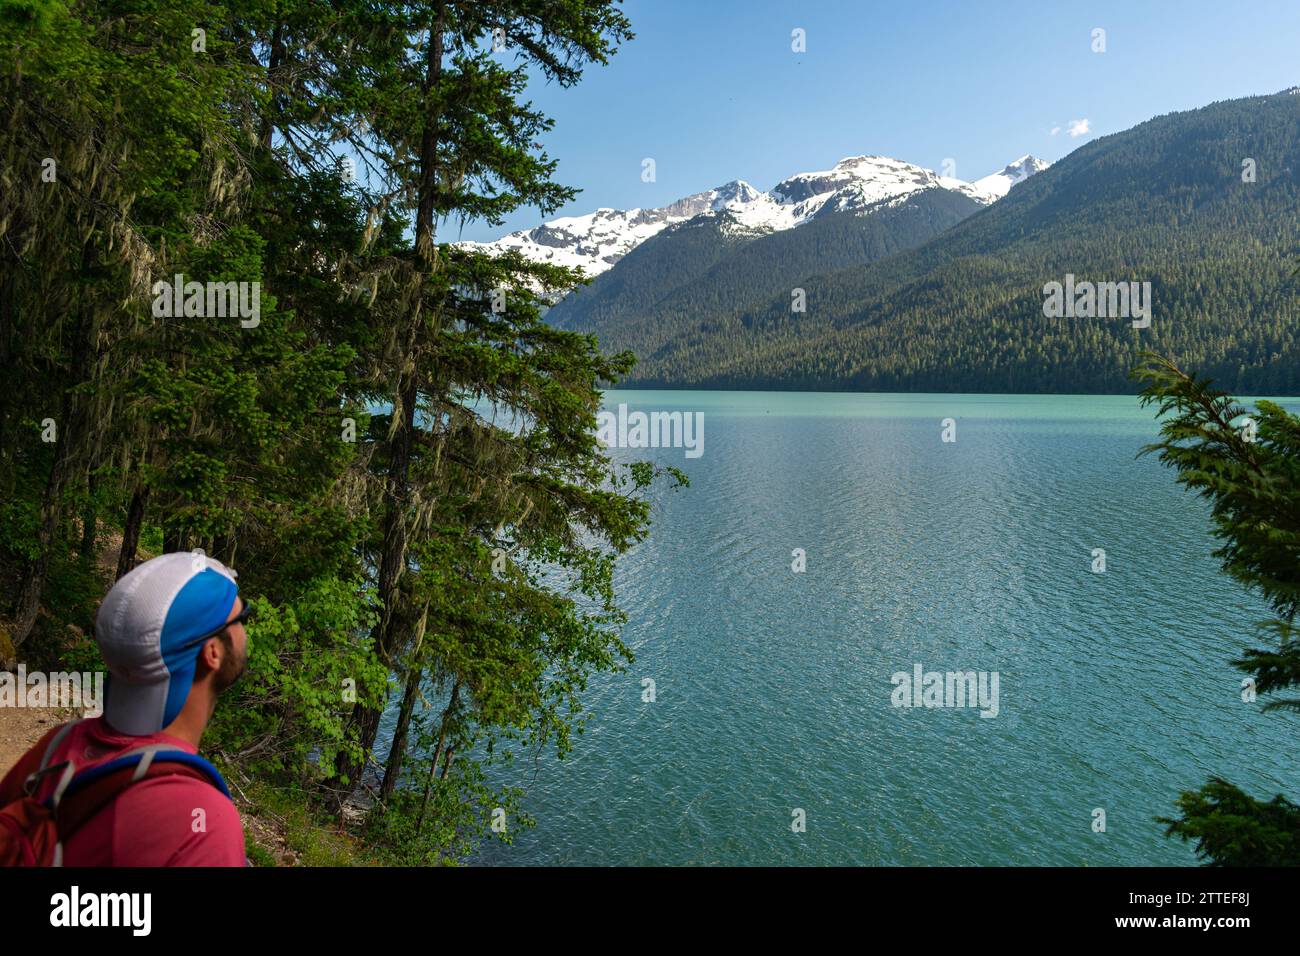 Un escursionista osserva le tranquille acque turchesi del lago Cheakamus, abbracciate dalle lussureggianti foreste delle Montagne Rocciose canadesi. Foto Stock